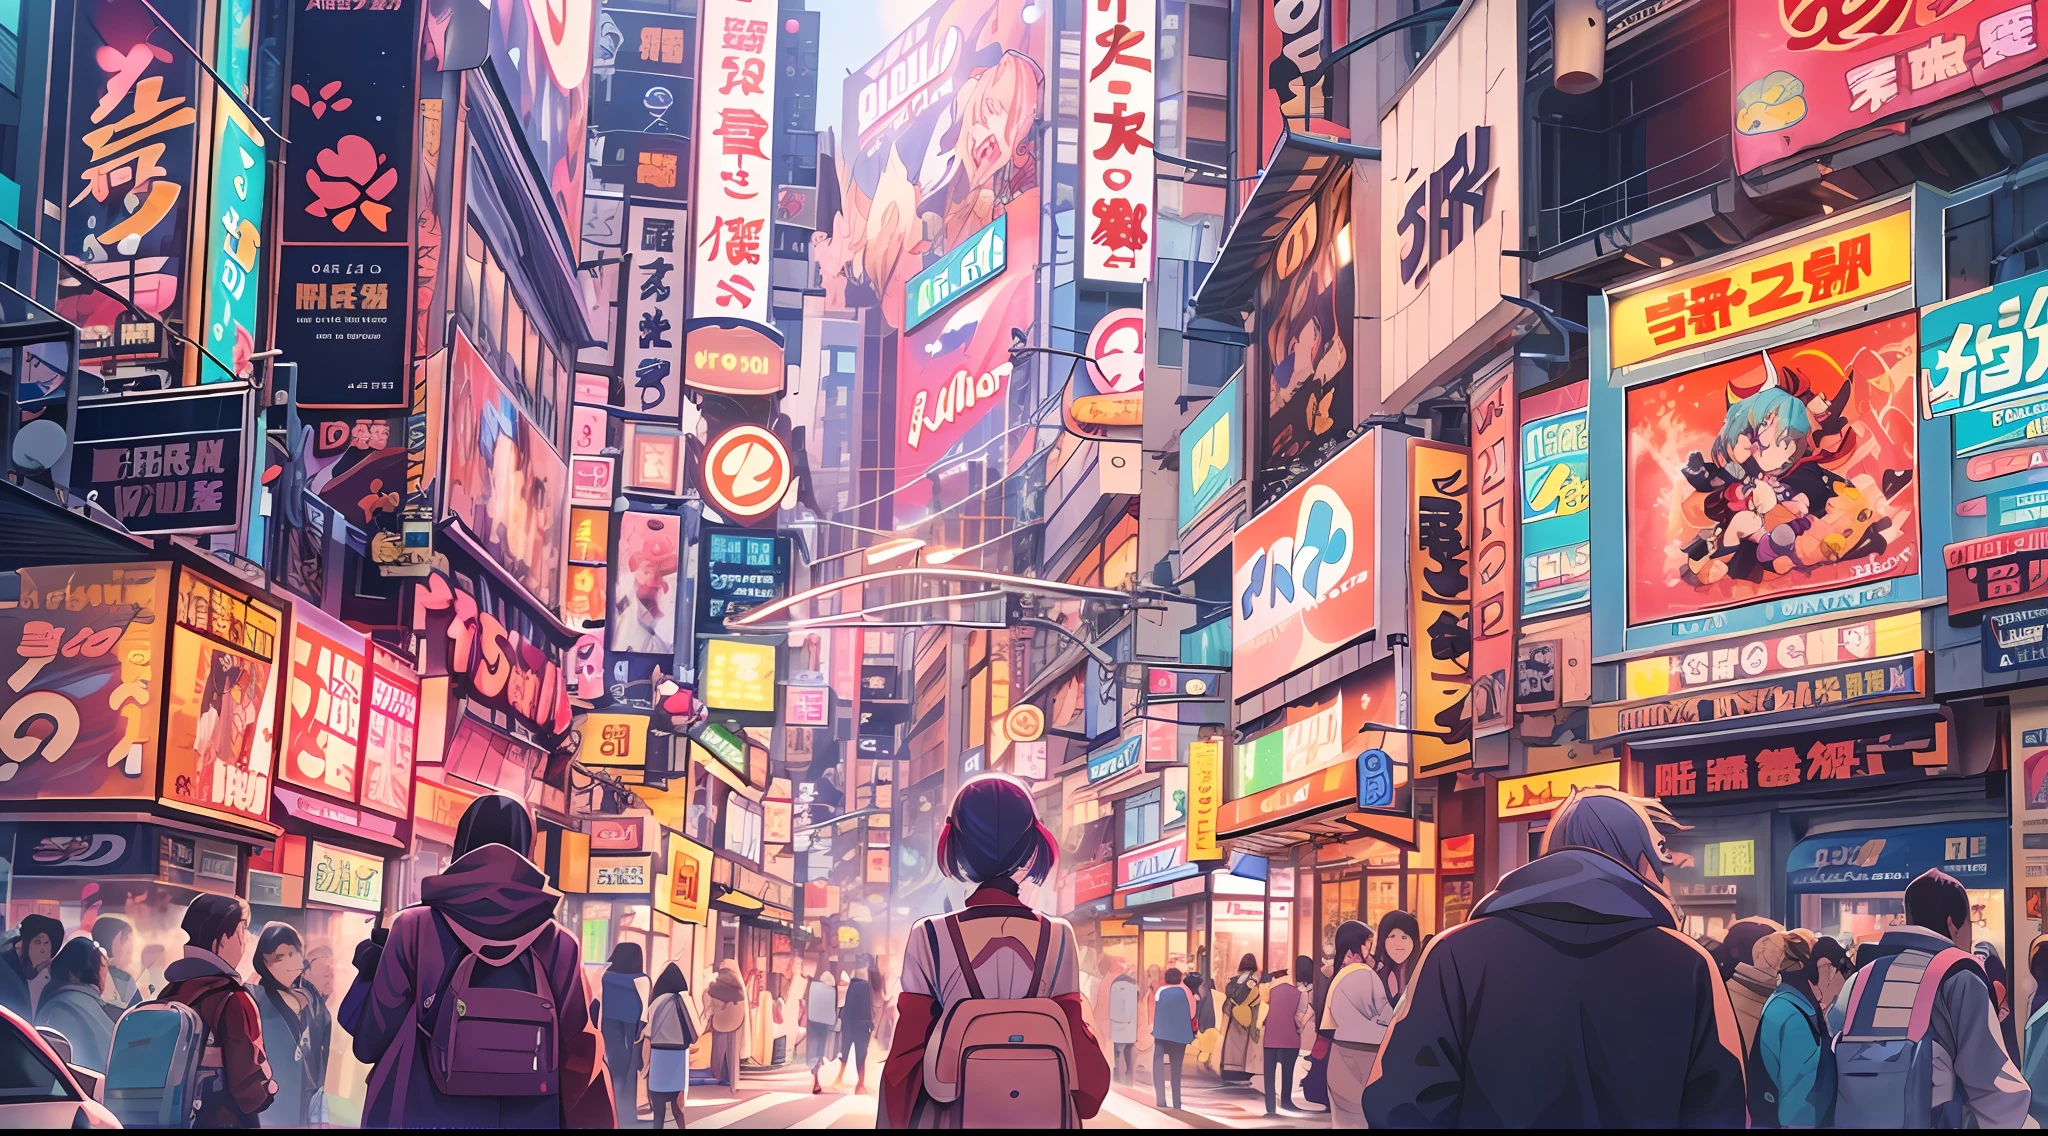 Explorez les rues animées de "Akihabara" - néons, foules animées, paradis des dessins animés, jeux d&#39;arcade, magasins de mangas, culture du cosplay, cafés de ménage, Gadgets technologiques, ambiance futuriste, ambiance énergique, paradis des otakus.